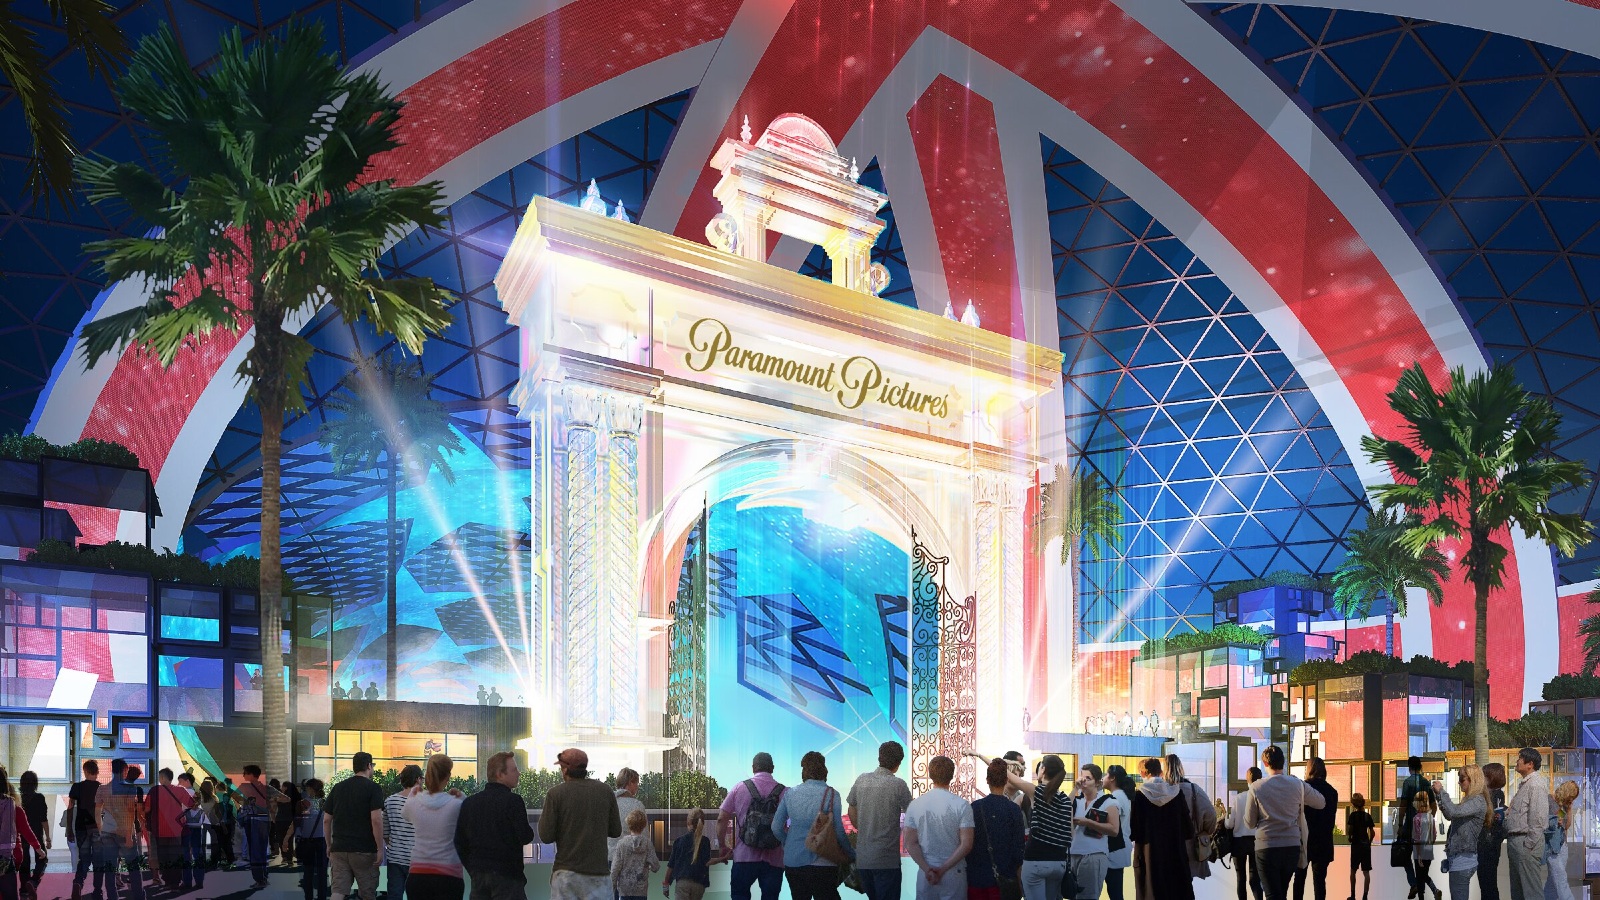 Découvrez The London Resort, le futur parc d'attractions ultra-moderne qui concurrencera Disneyland Paris